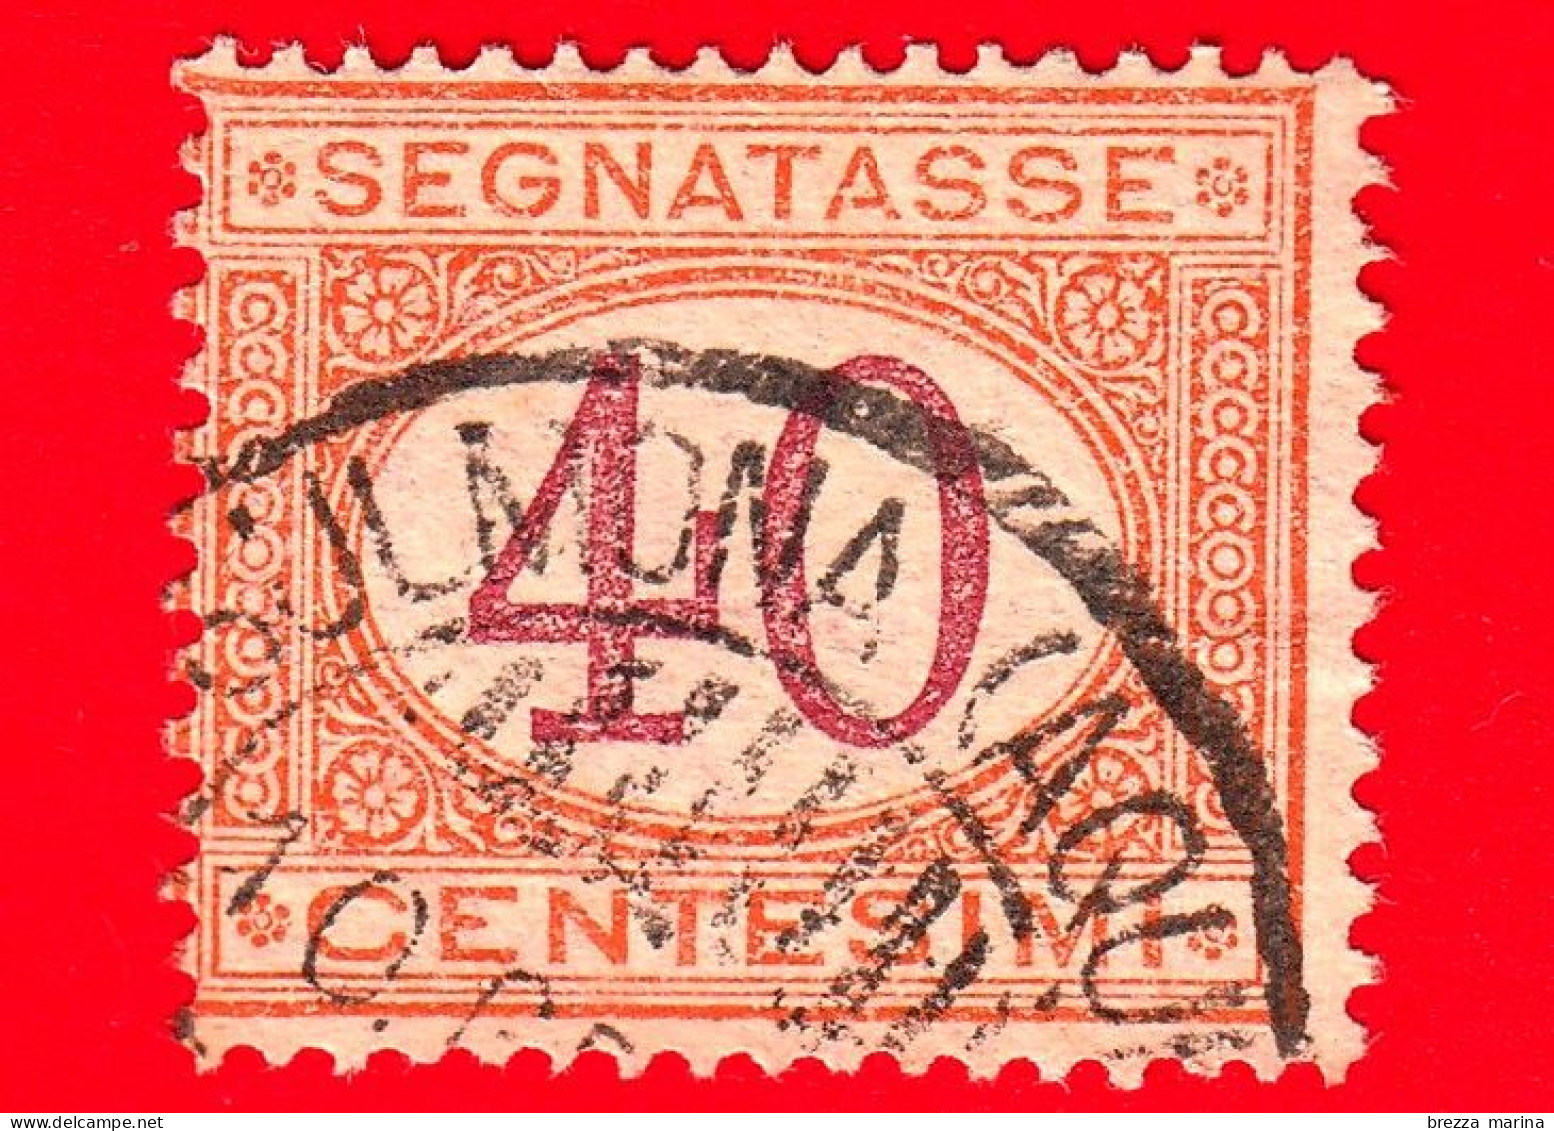 ITALIA - Usato -  1870 - 1890 - Segnatasse - Cifra Entro Un Ovale - 40 C. - Impuestos